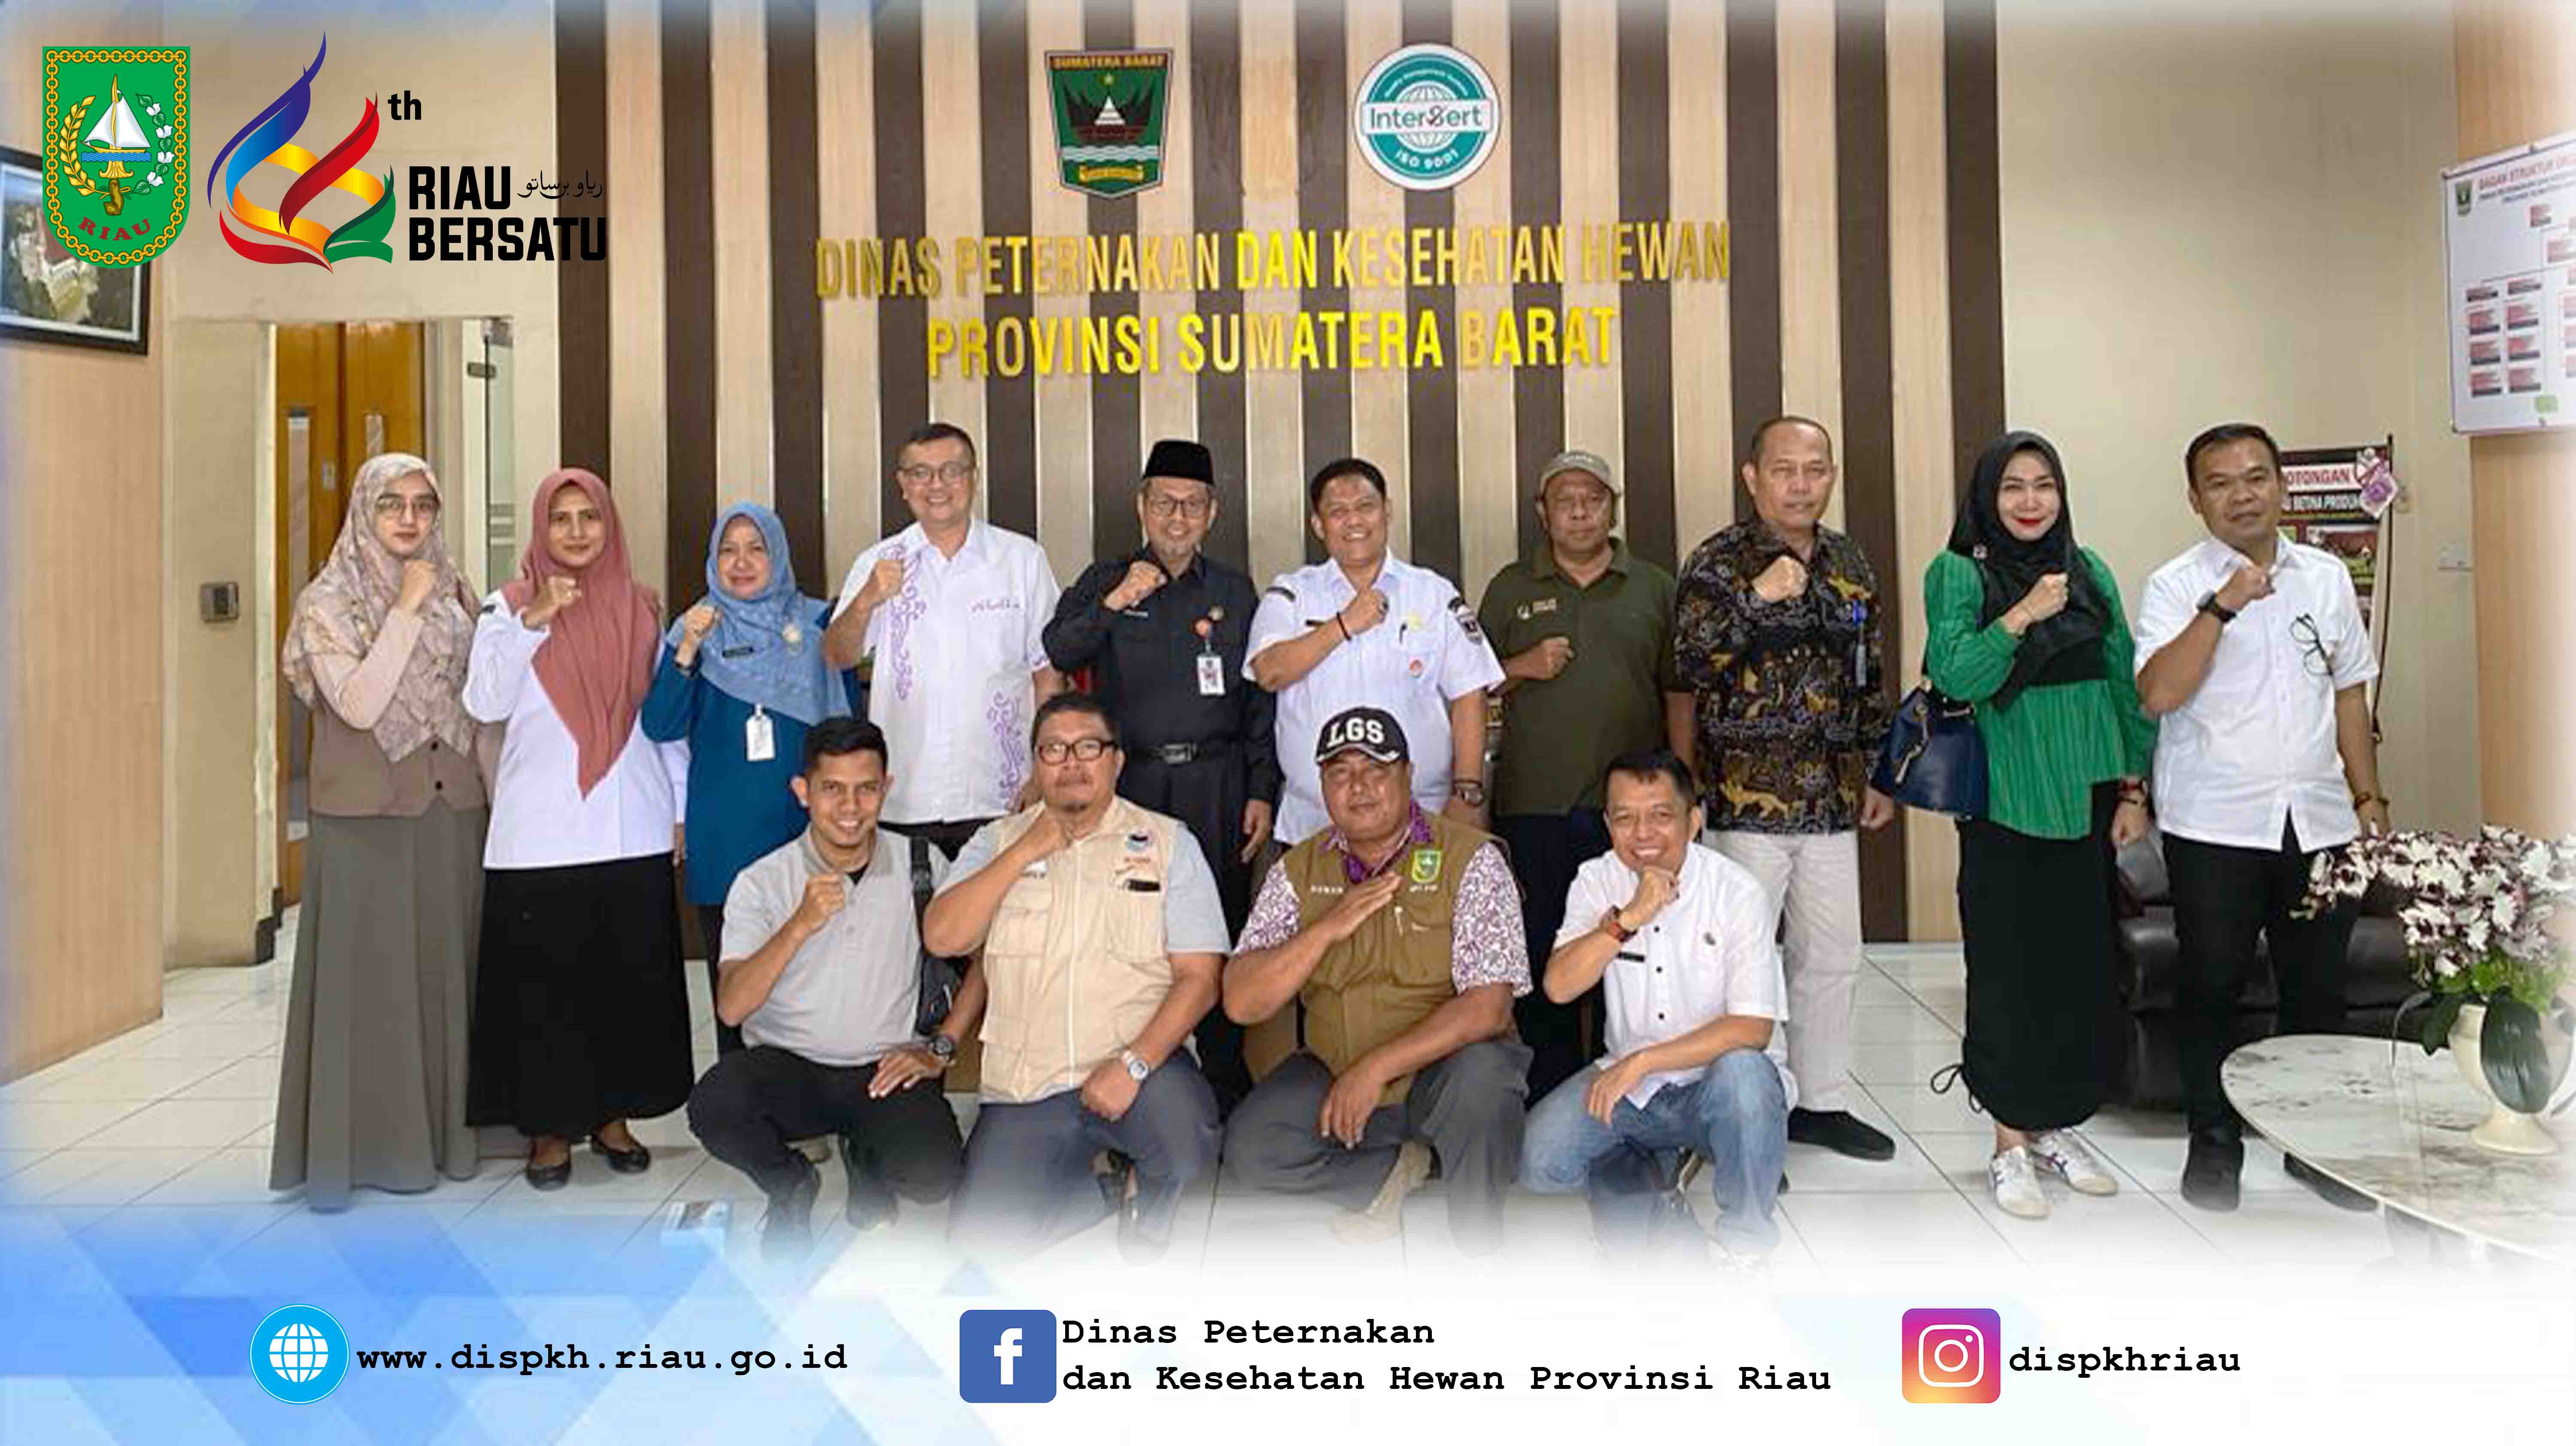 Kunjungan kerja ke Dinas Peternakan dan Kesehatan Hewan Provinsi Sumatera Barat